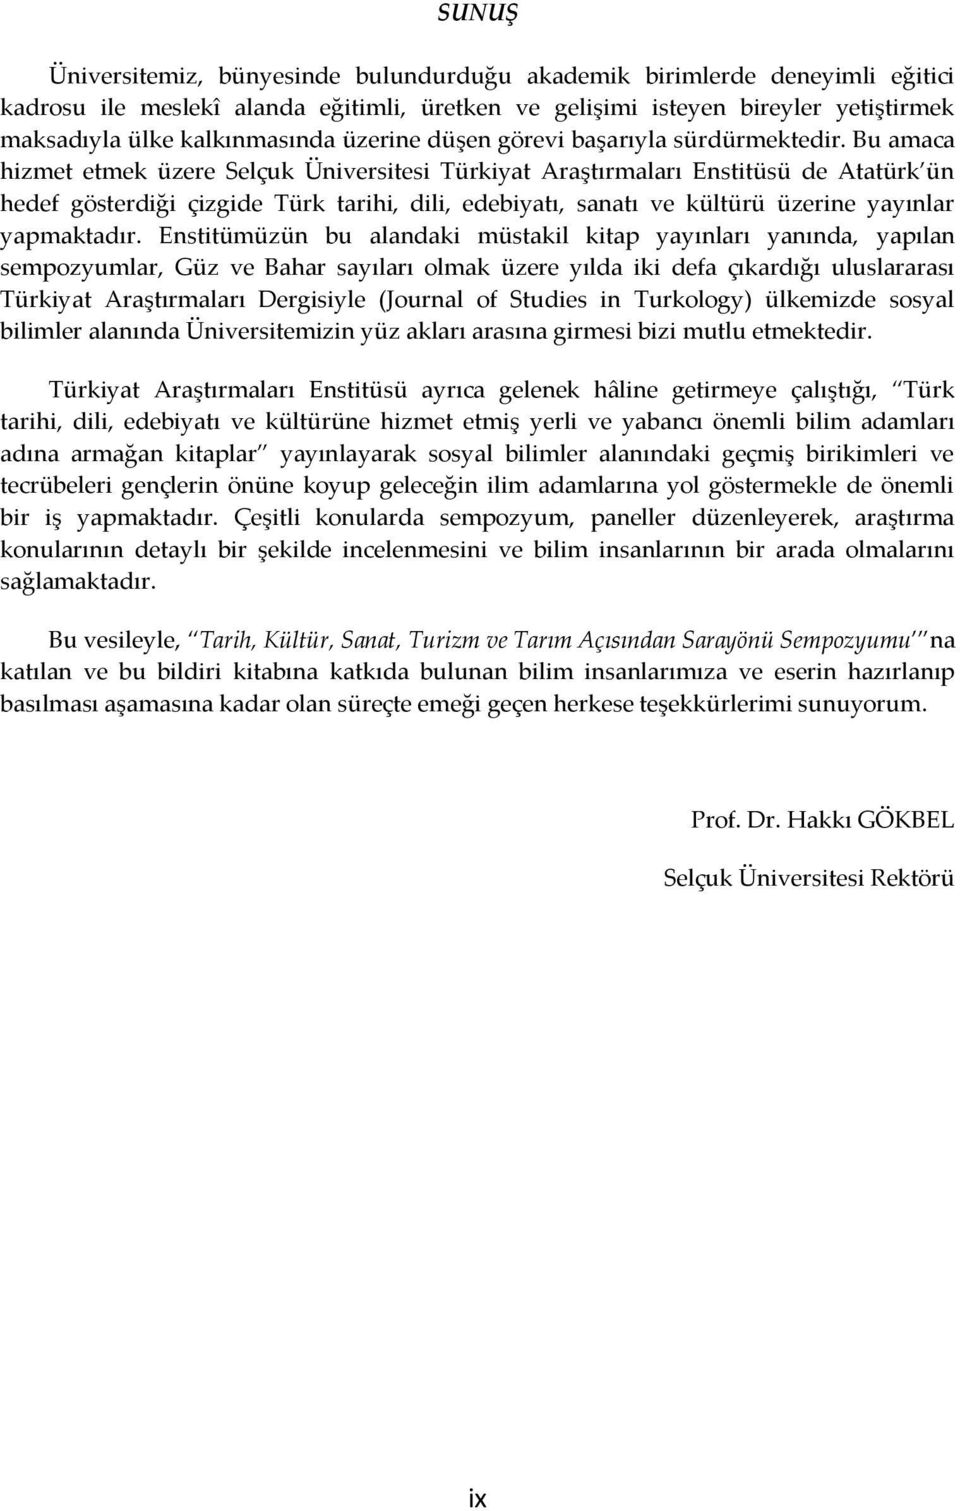 Bu amaca hizmet etmek üzere Selçuk Üniversitesi Türkiyat Araştırmaları Enstitüsü de Atatürk ün hedef gösterdiği çizgide Türk tarihi, dili, edebiyatı, sanatı ve kültürü üzerine yayınlar yapmaktadır.